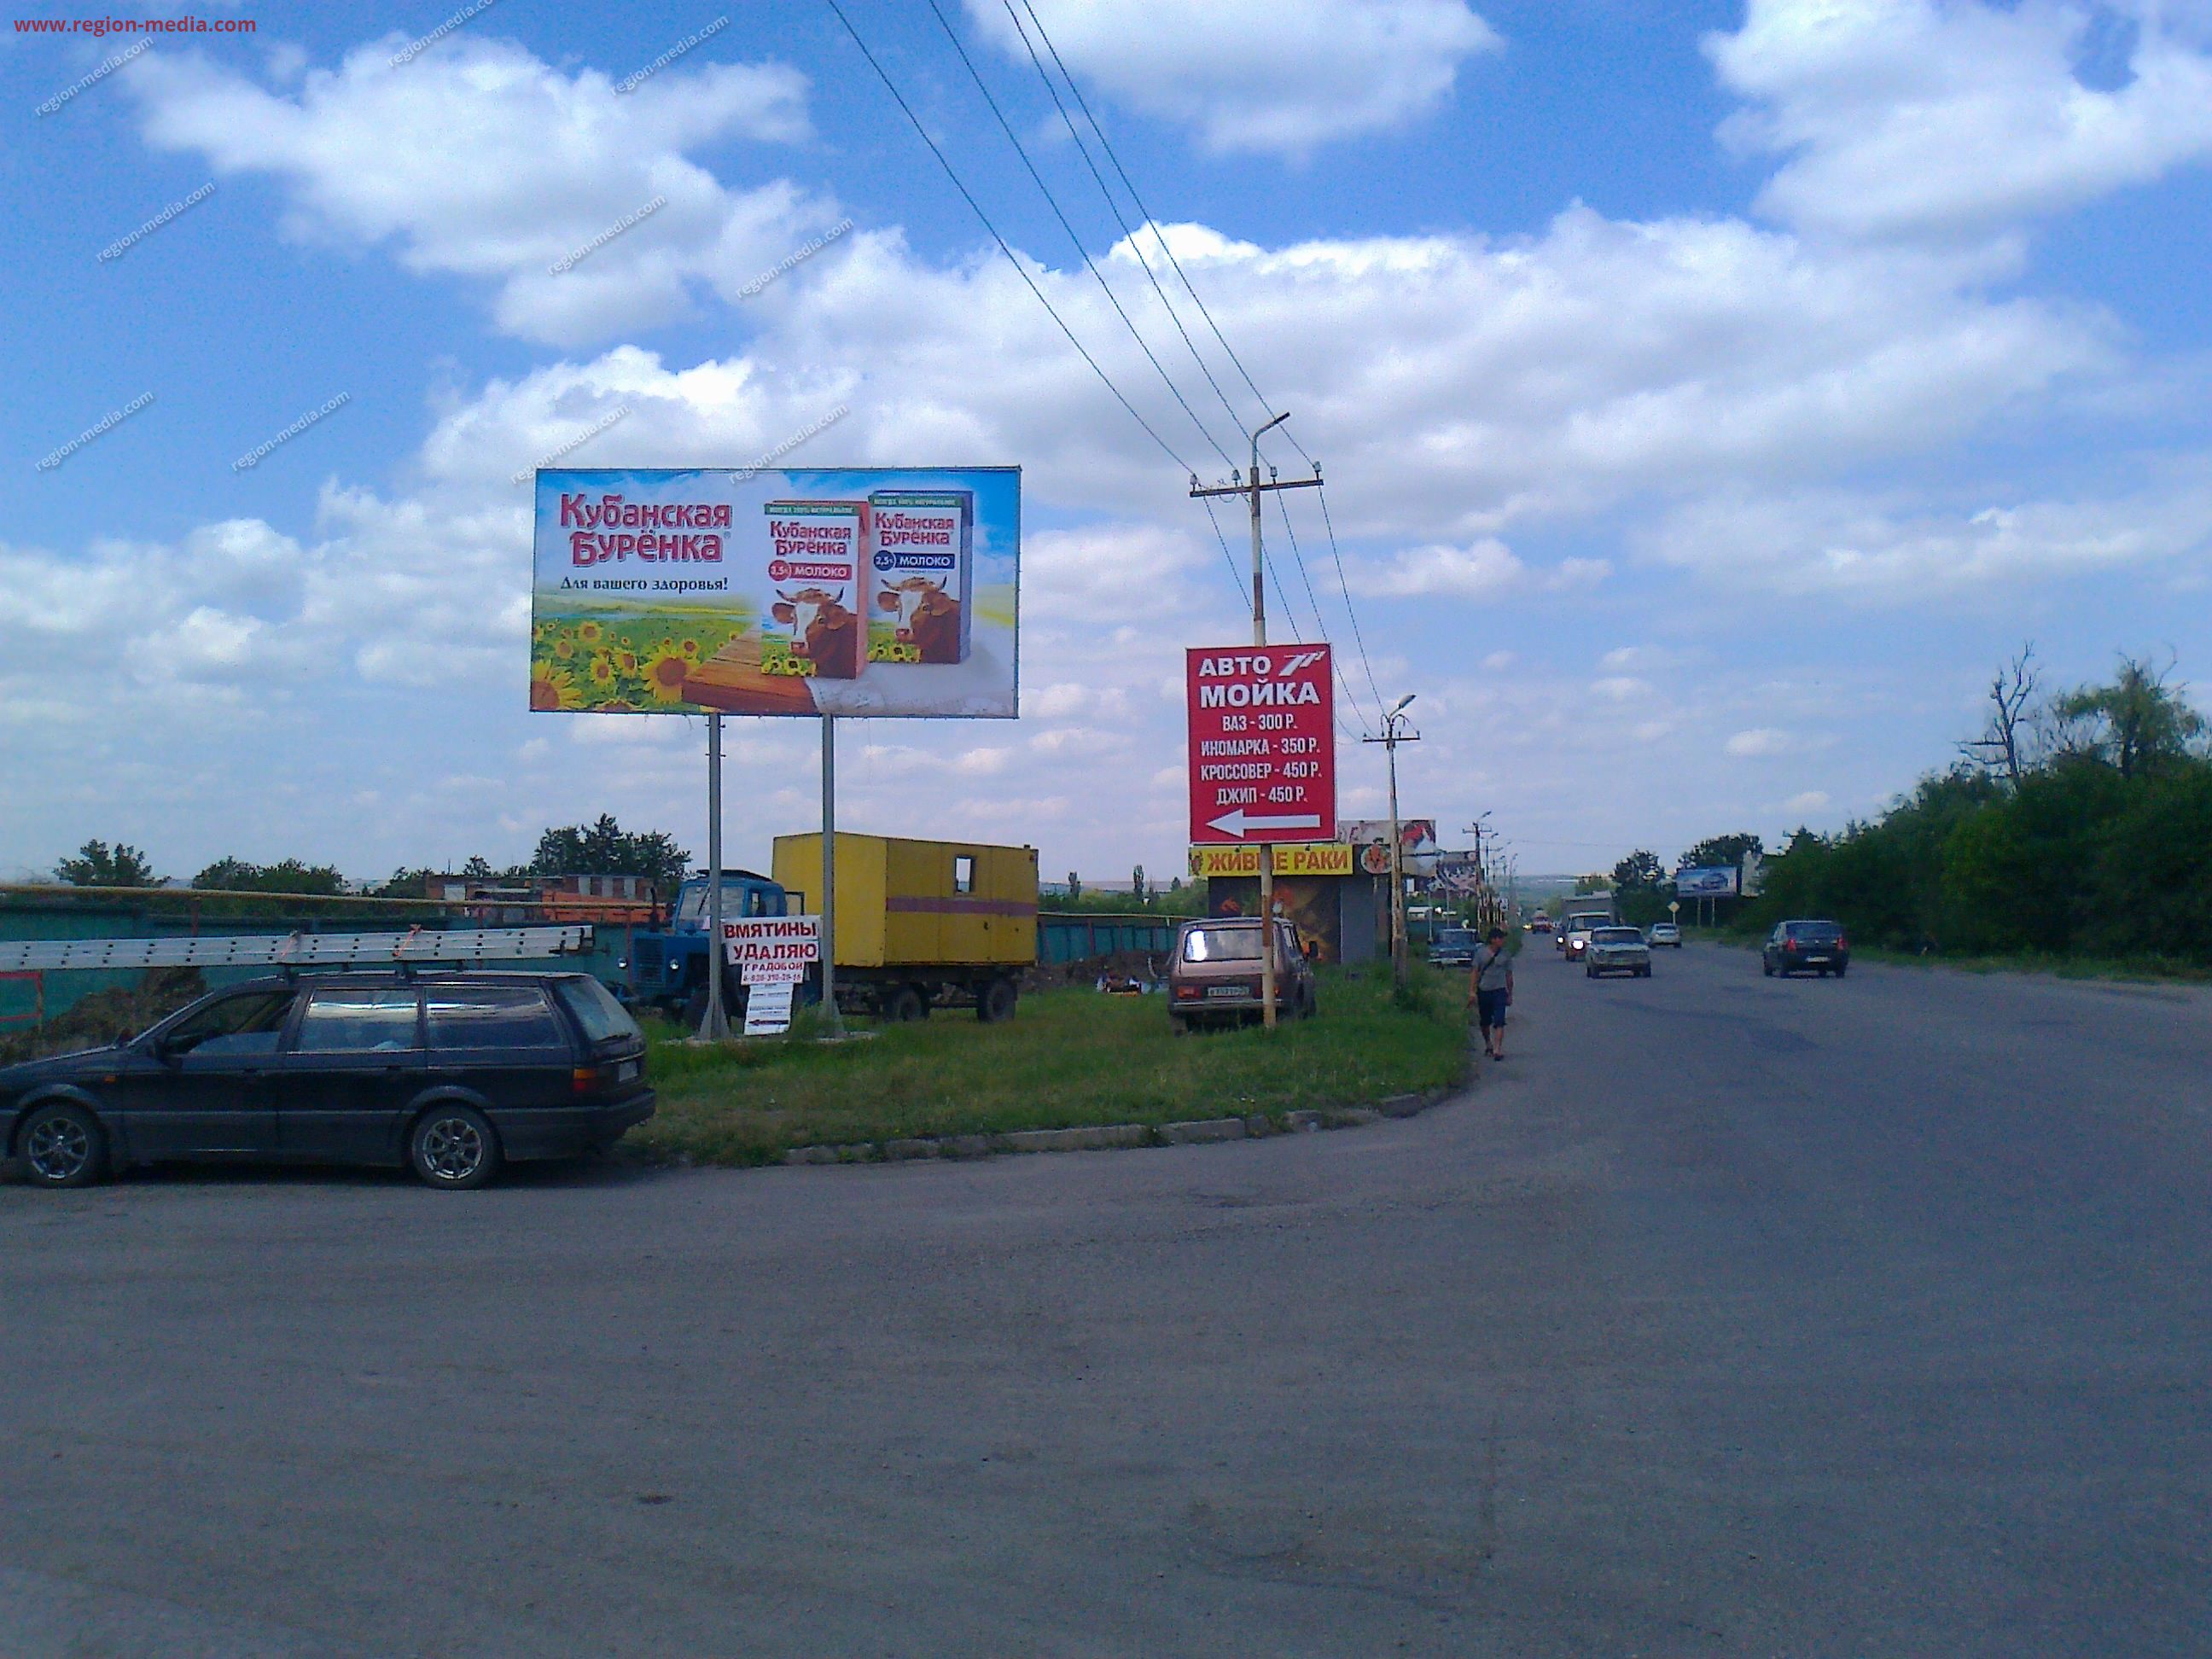 Размещение рекламы компании "Кубанская бурёнка" на щитах 3х6 в городе Минеральные Воды